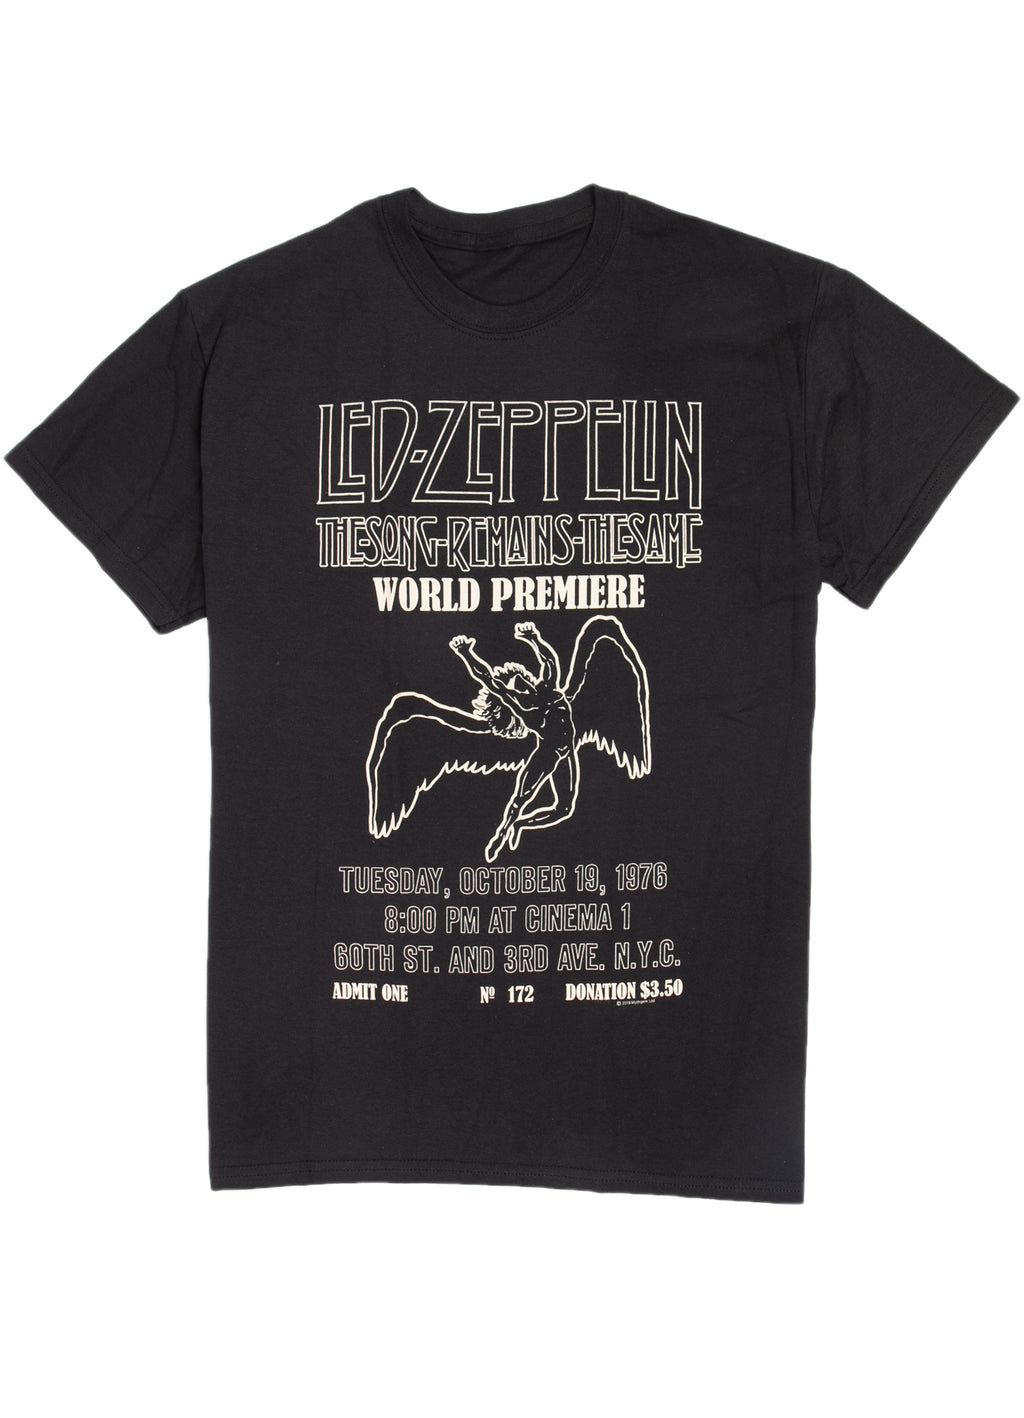 Led Zeppelin world premier t-shirt.